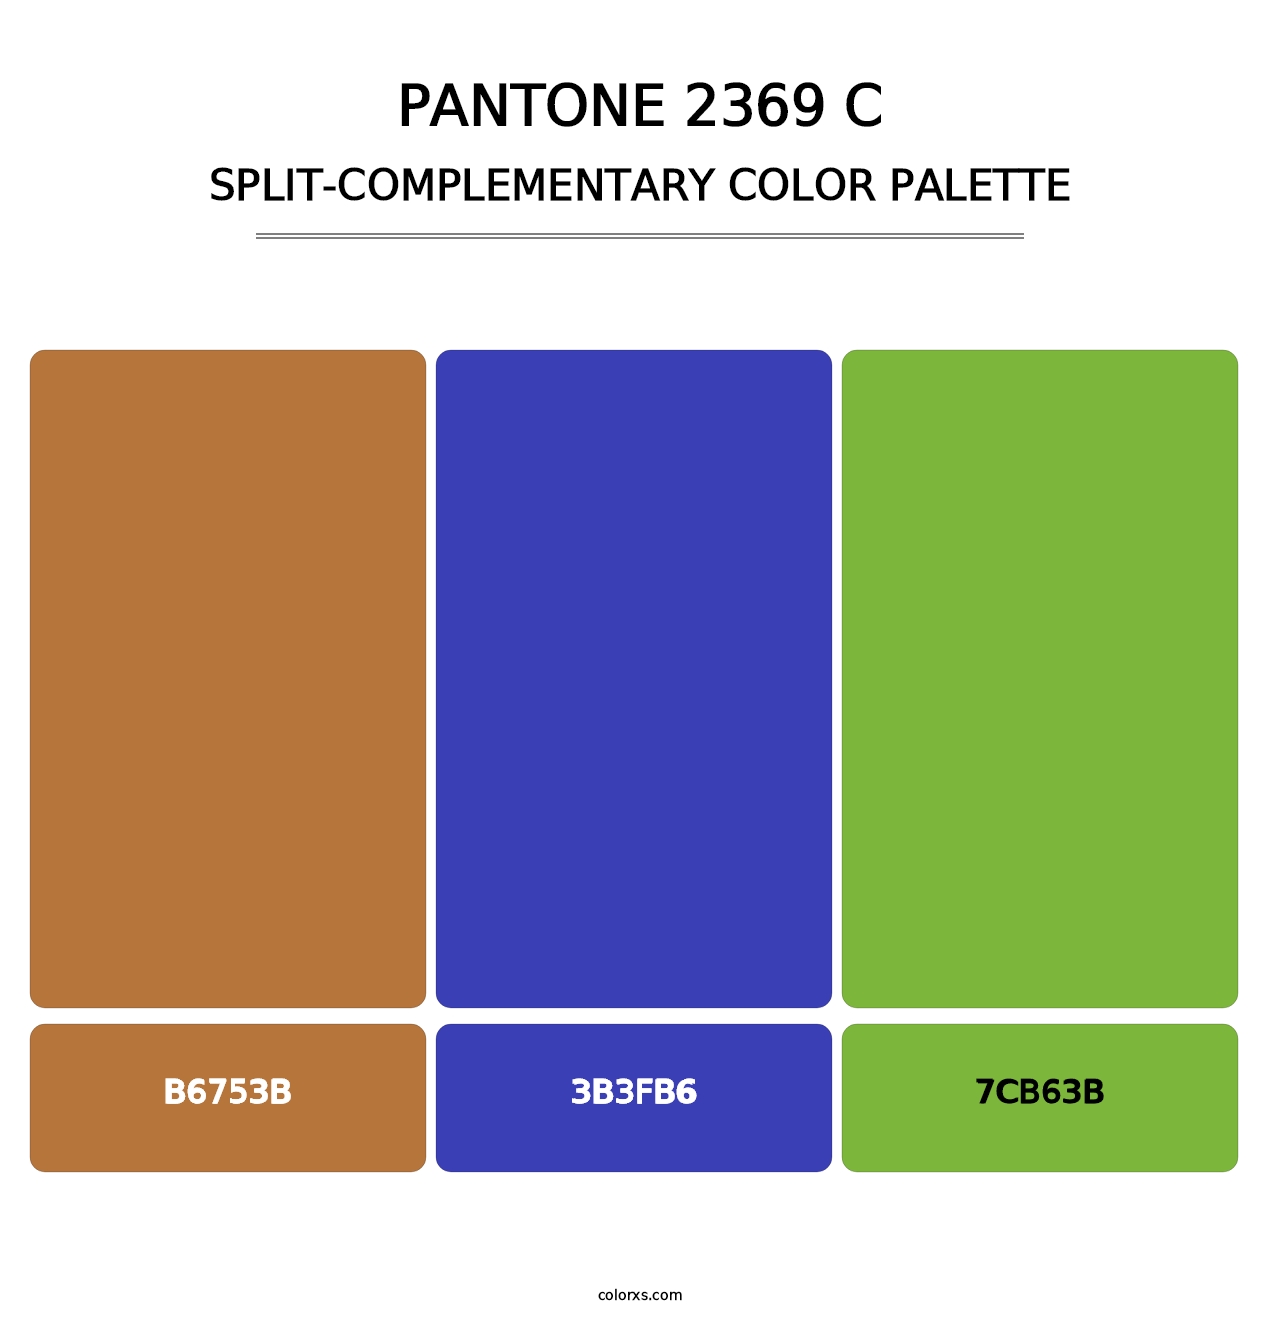 PANTONE 2369 C - Split-Complementary Color Palette